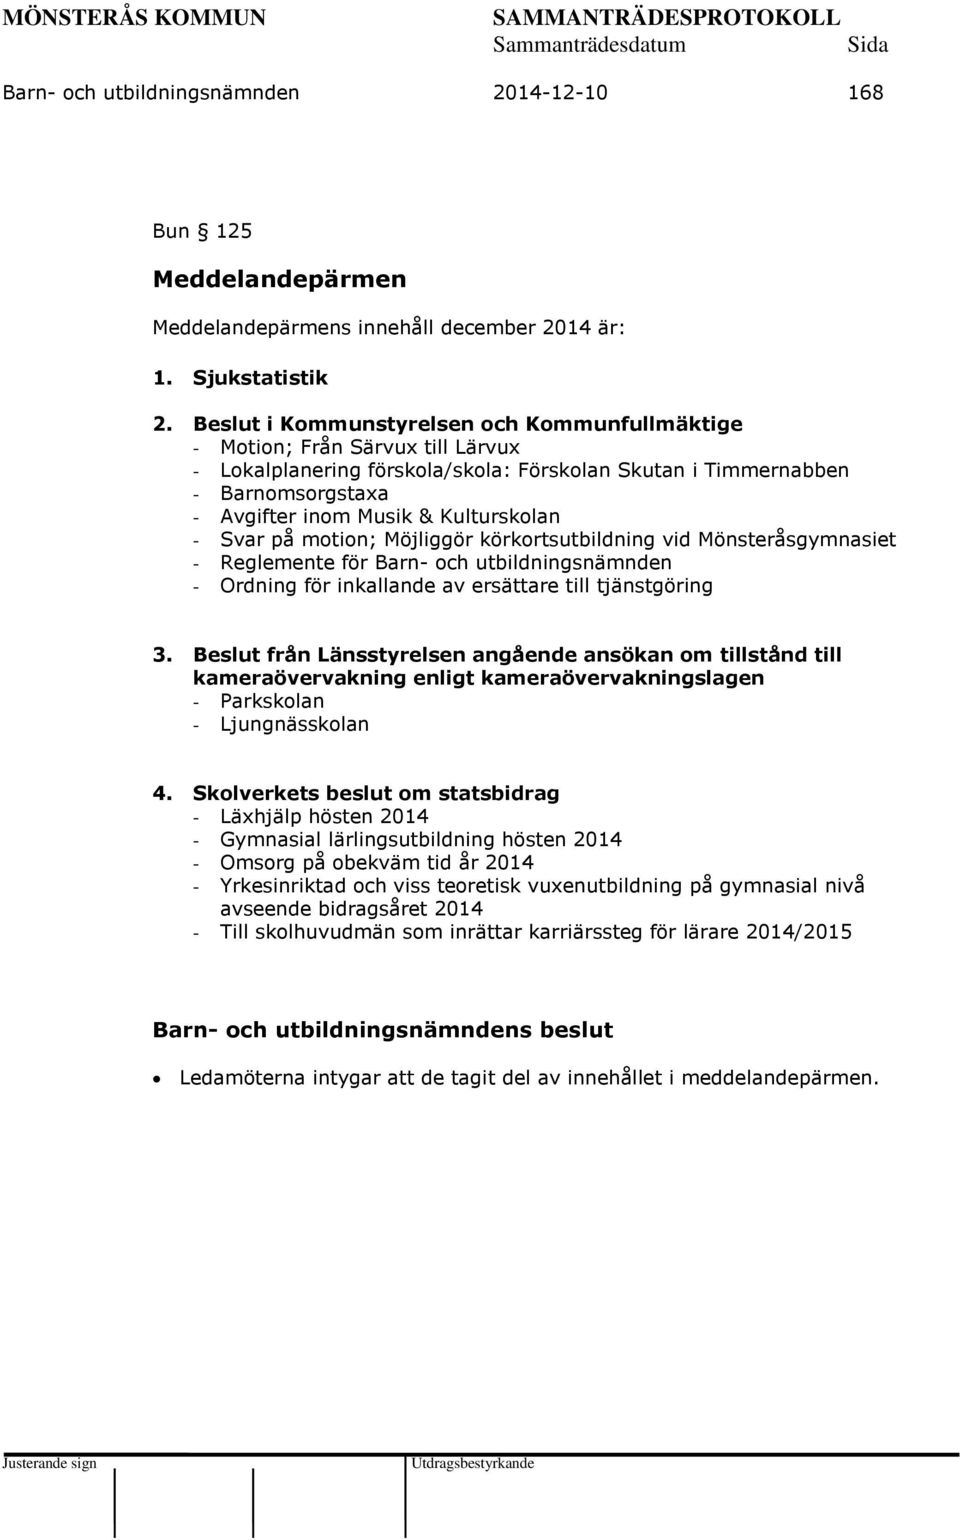 Kulturskolan - Svar på motion; Möjliggör körkortsutbildning vid Mönsteråsgymnasiet - Reglemente för Barn- och utbildningsnämnden - Ordning för inkallande av ersättare till tjänstgöring 3.